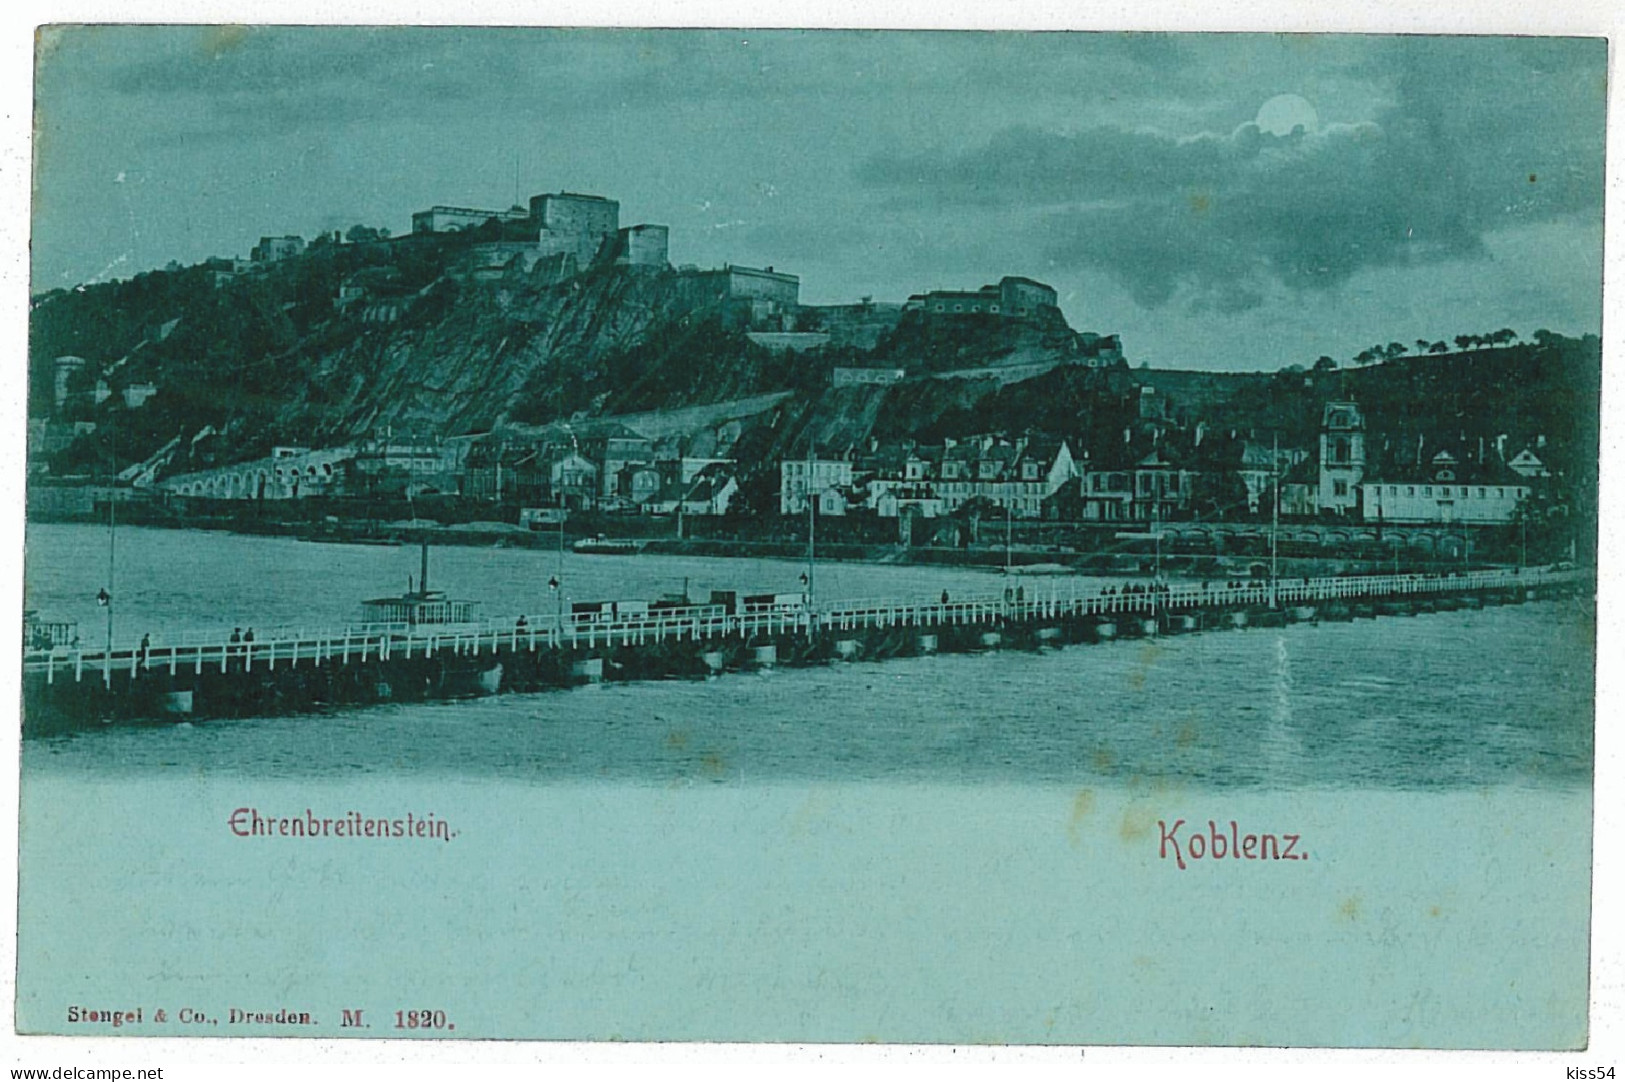 GER 00 - 5724 KOBLENZ, Germany, Litho, Bridge - Old Postcard - Used - 1898 - Koblenz